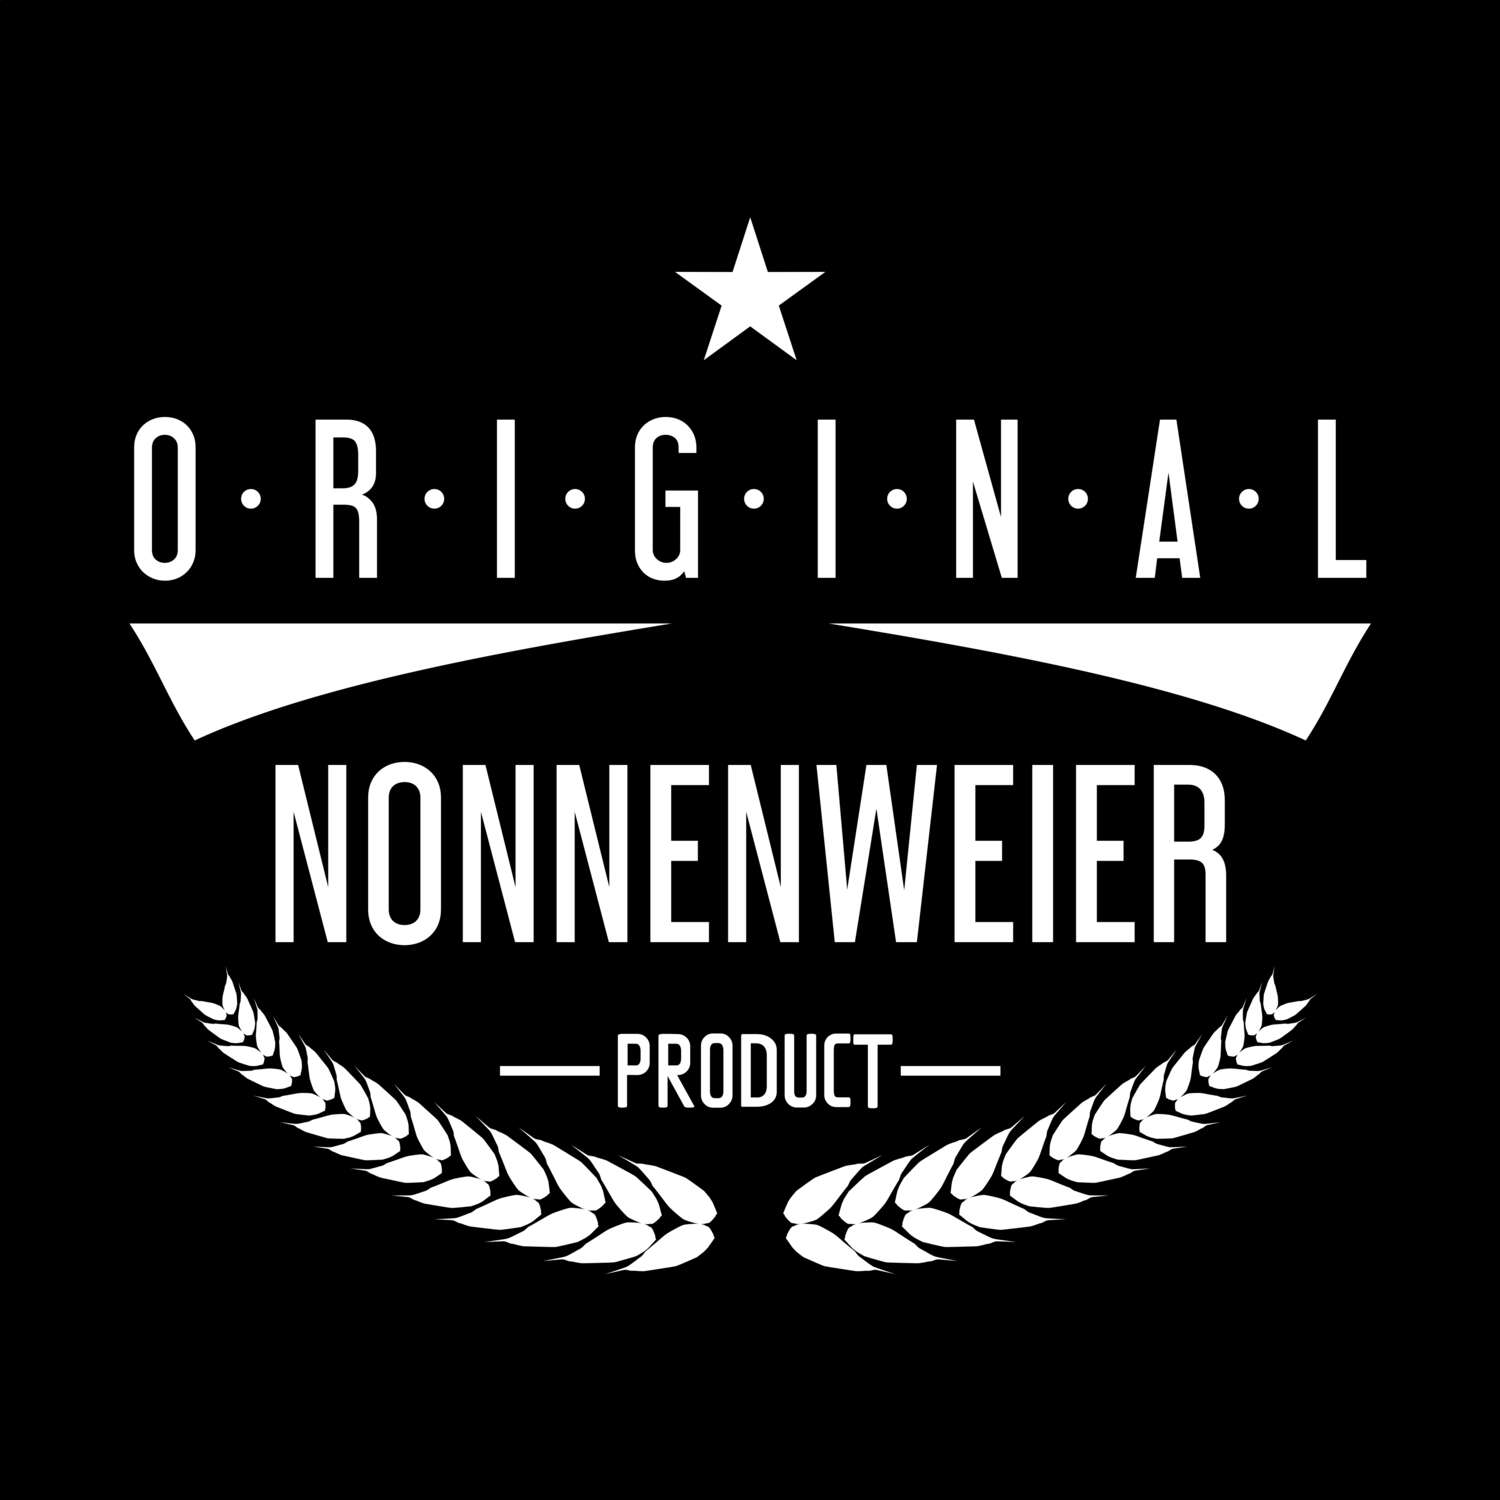 Nonnenweier T-Shirt »Original Product«